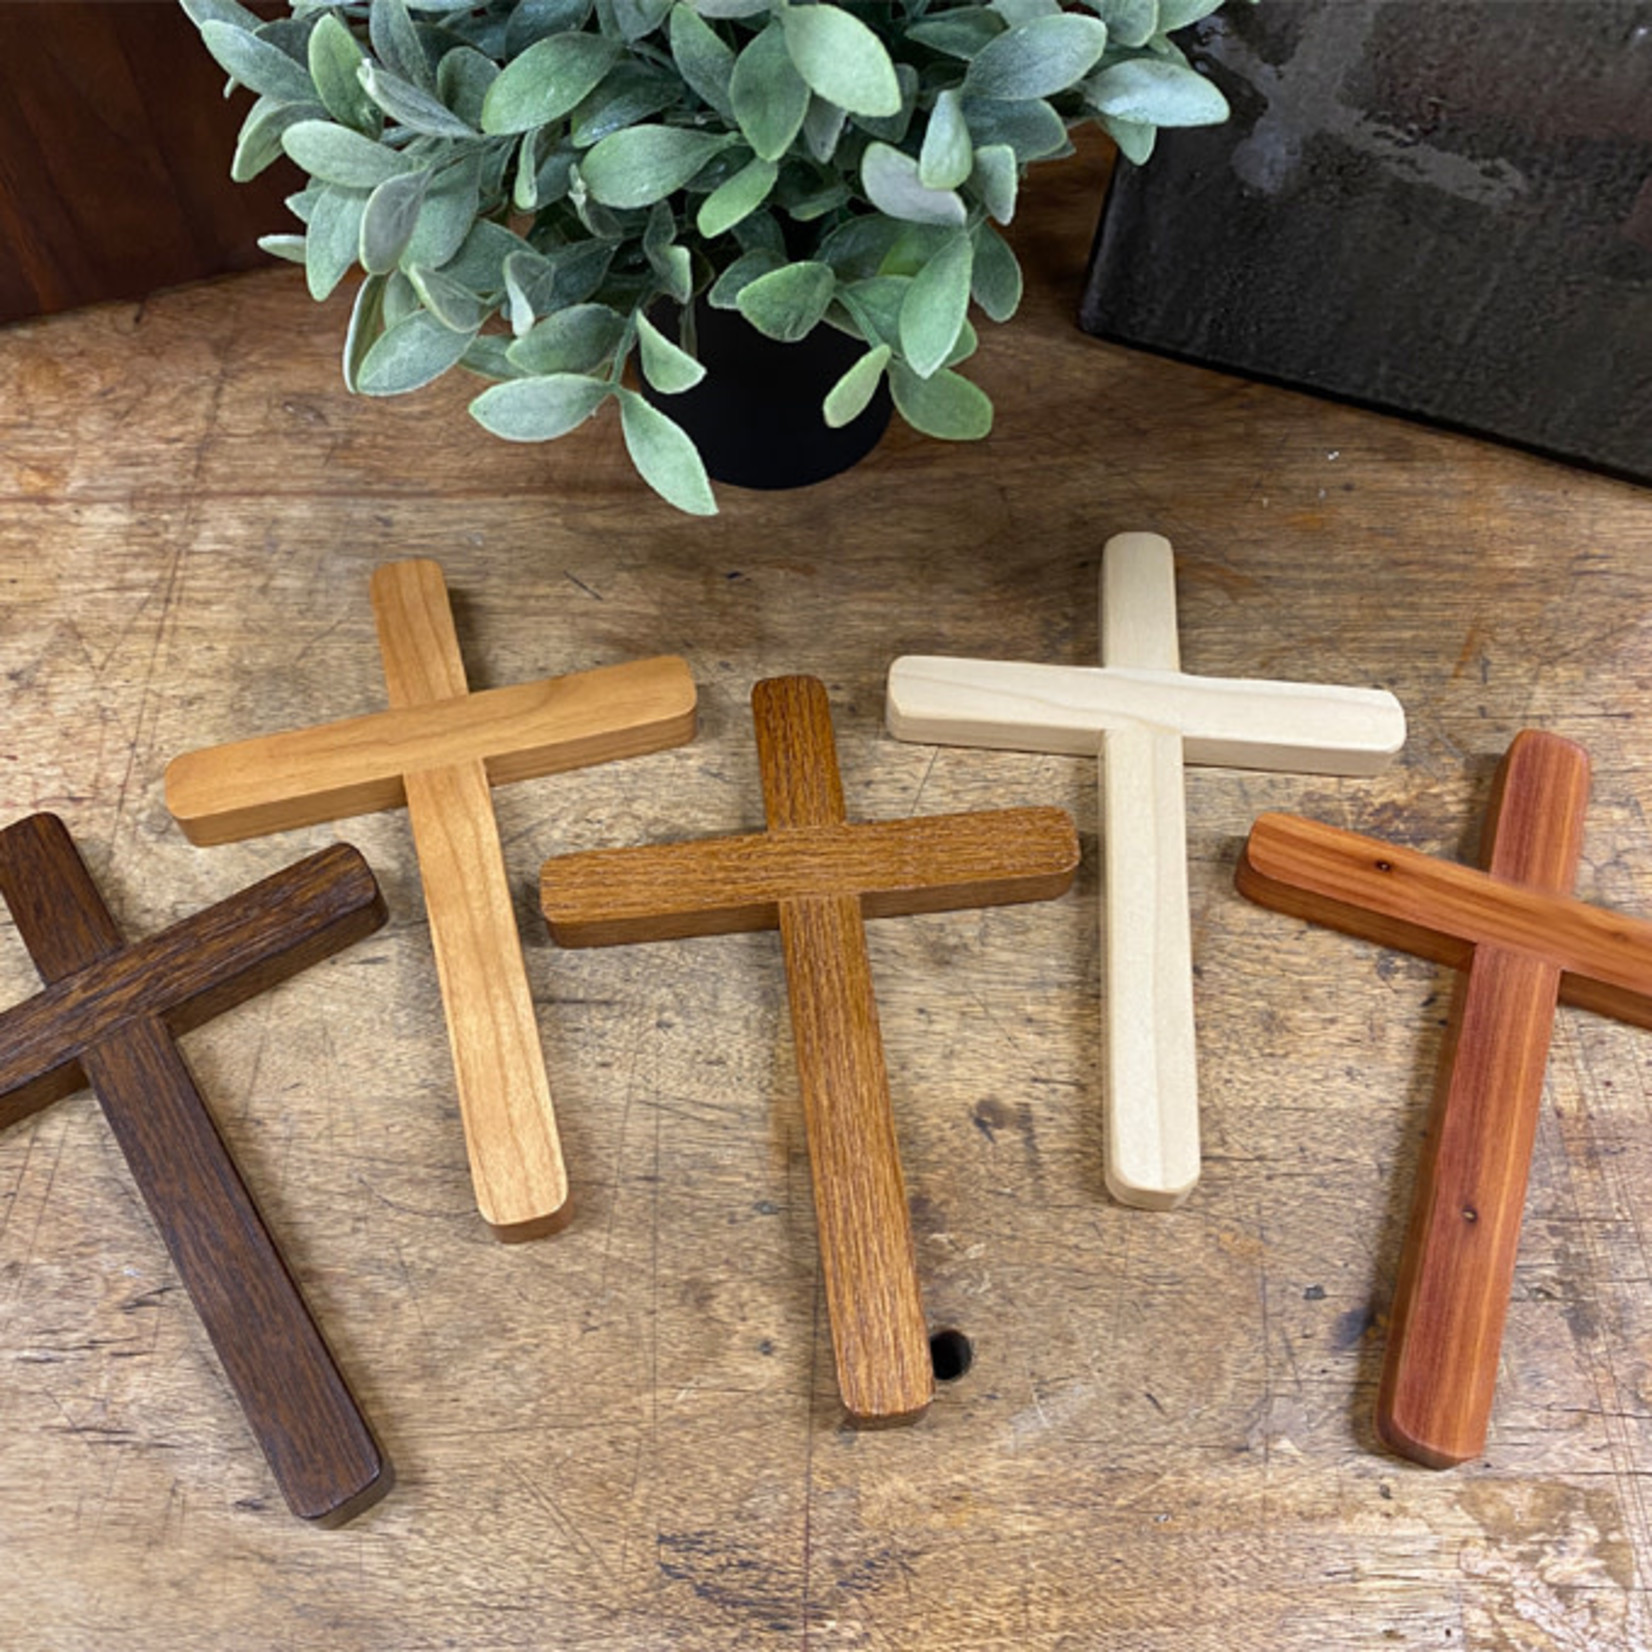 Abbey Woodworking Keepsake Cross - 5"x 7"